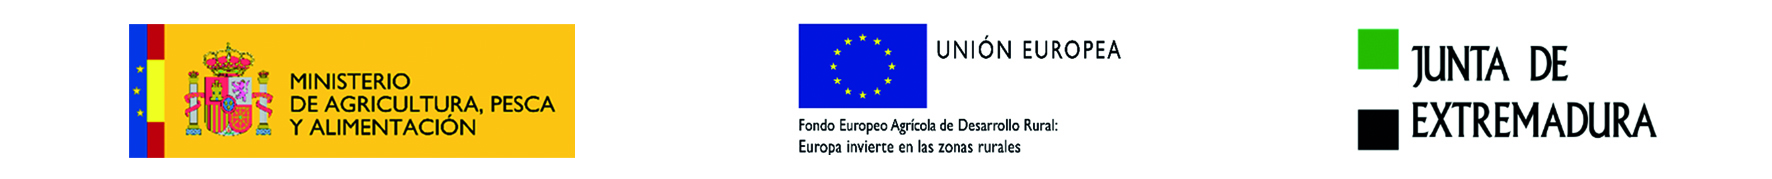 LOGO DEL MINISTERIO DE AGRICULTURA, PESCA Y ALIMENTACIÓN - UNION EUROPEA - JUNTA DE EXTREMADURA